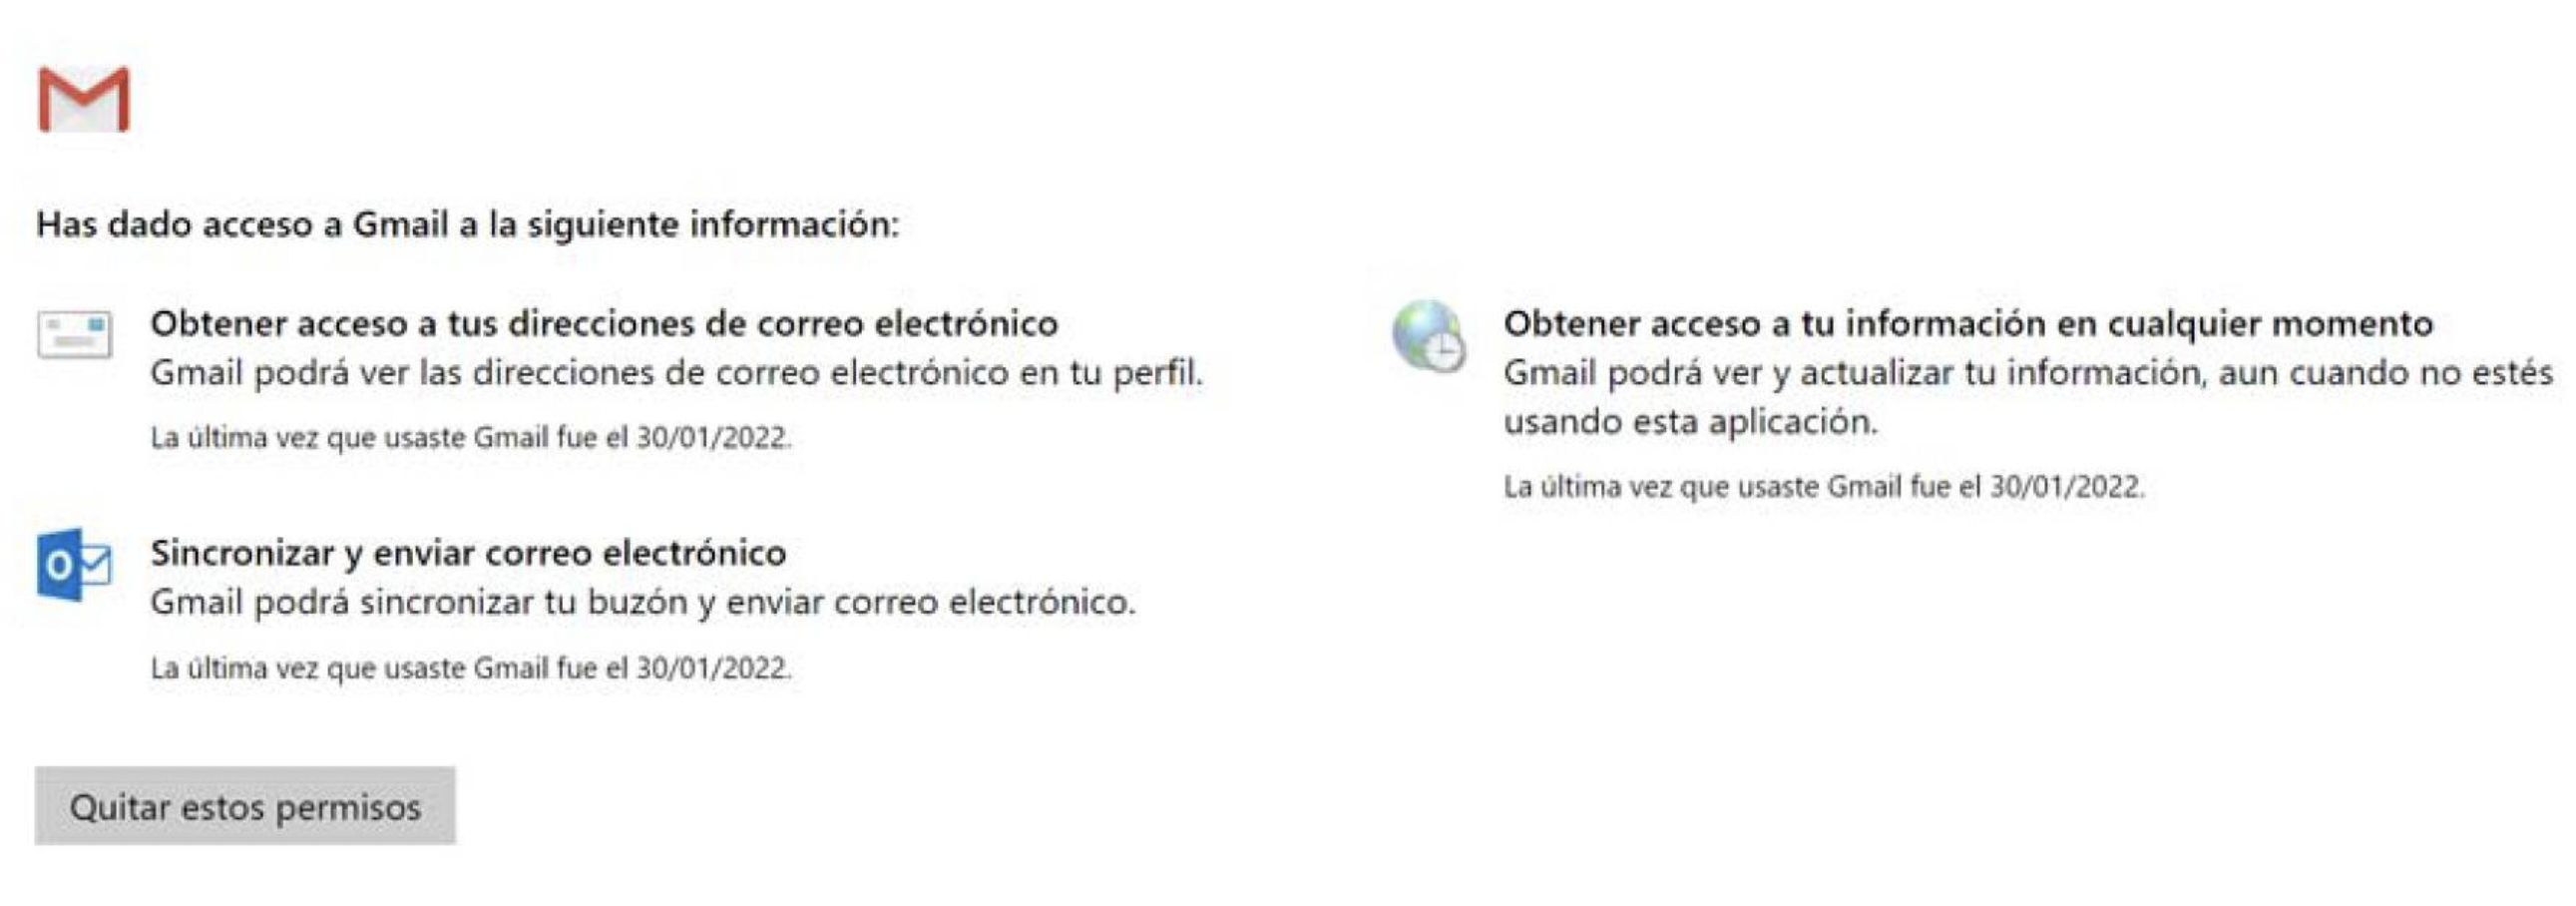 Opciones de privacidad en Gmail. (foto: Gmail/Jose Arana)